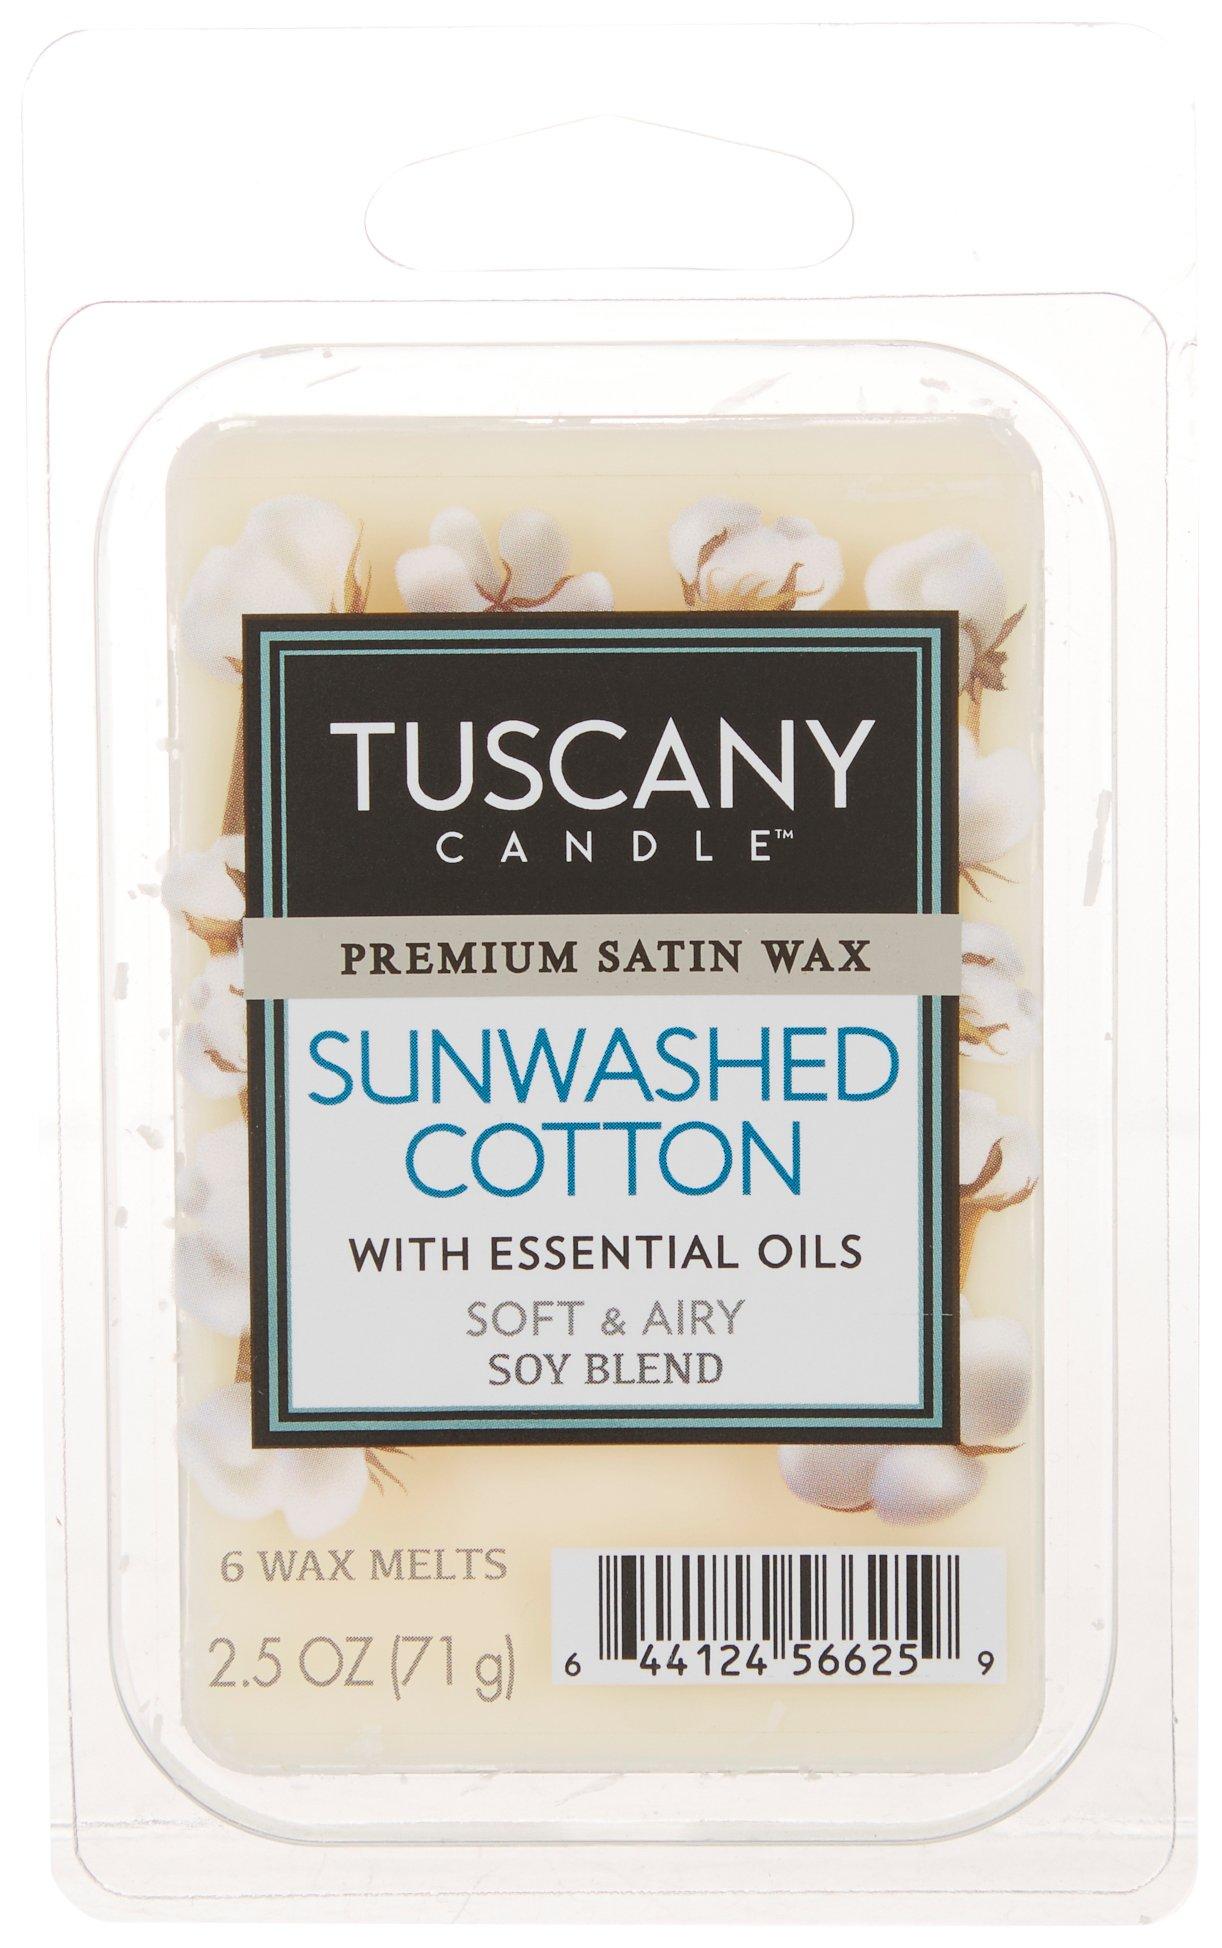 Tuscany 2.5 oz. Sunwashed Cotton Wax Melts